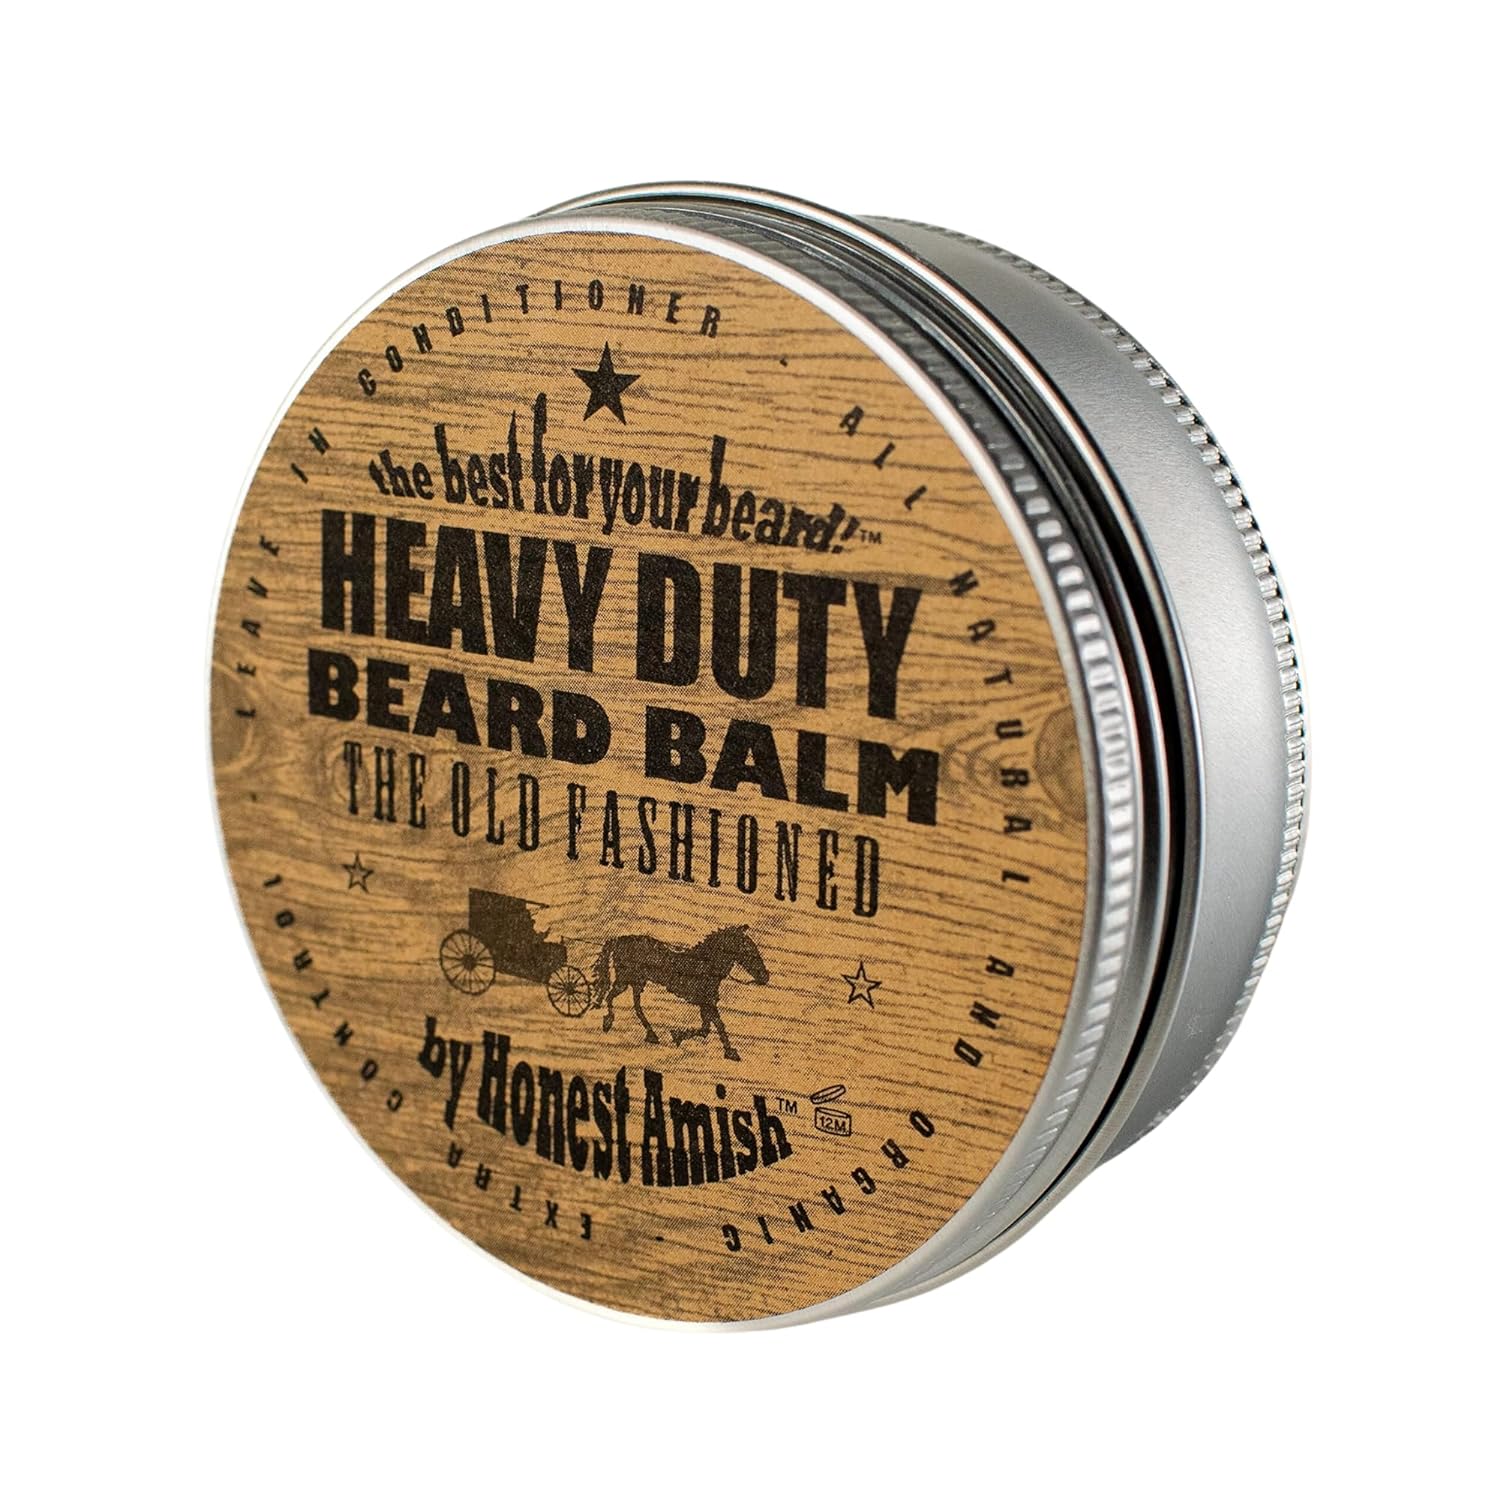 does honest amish beard balm help growth